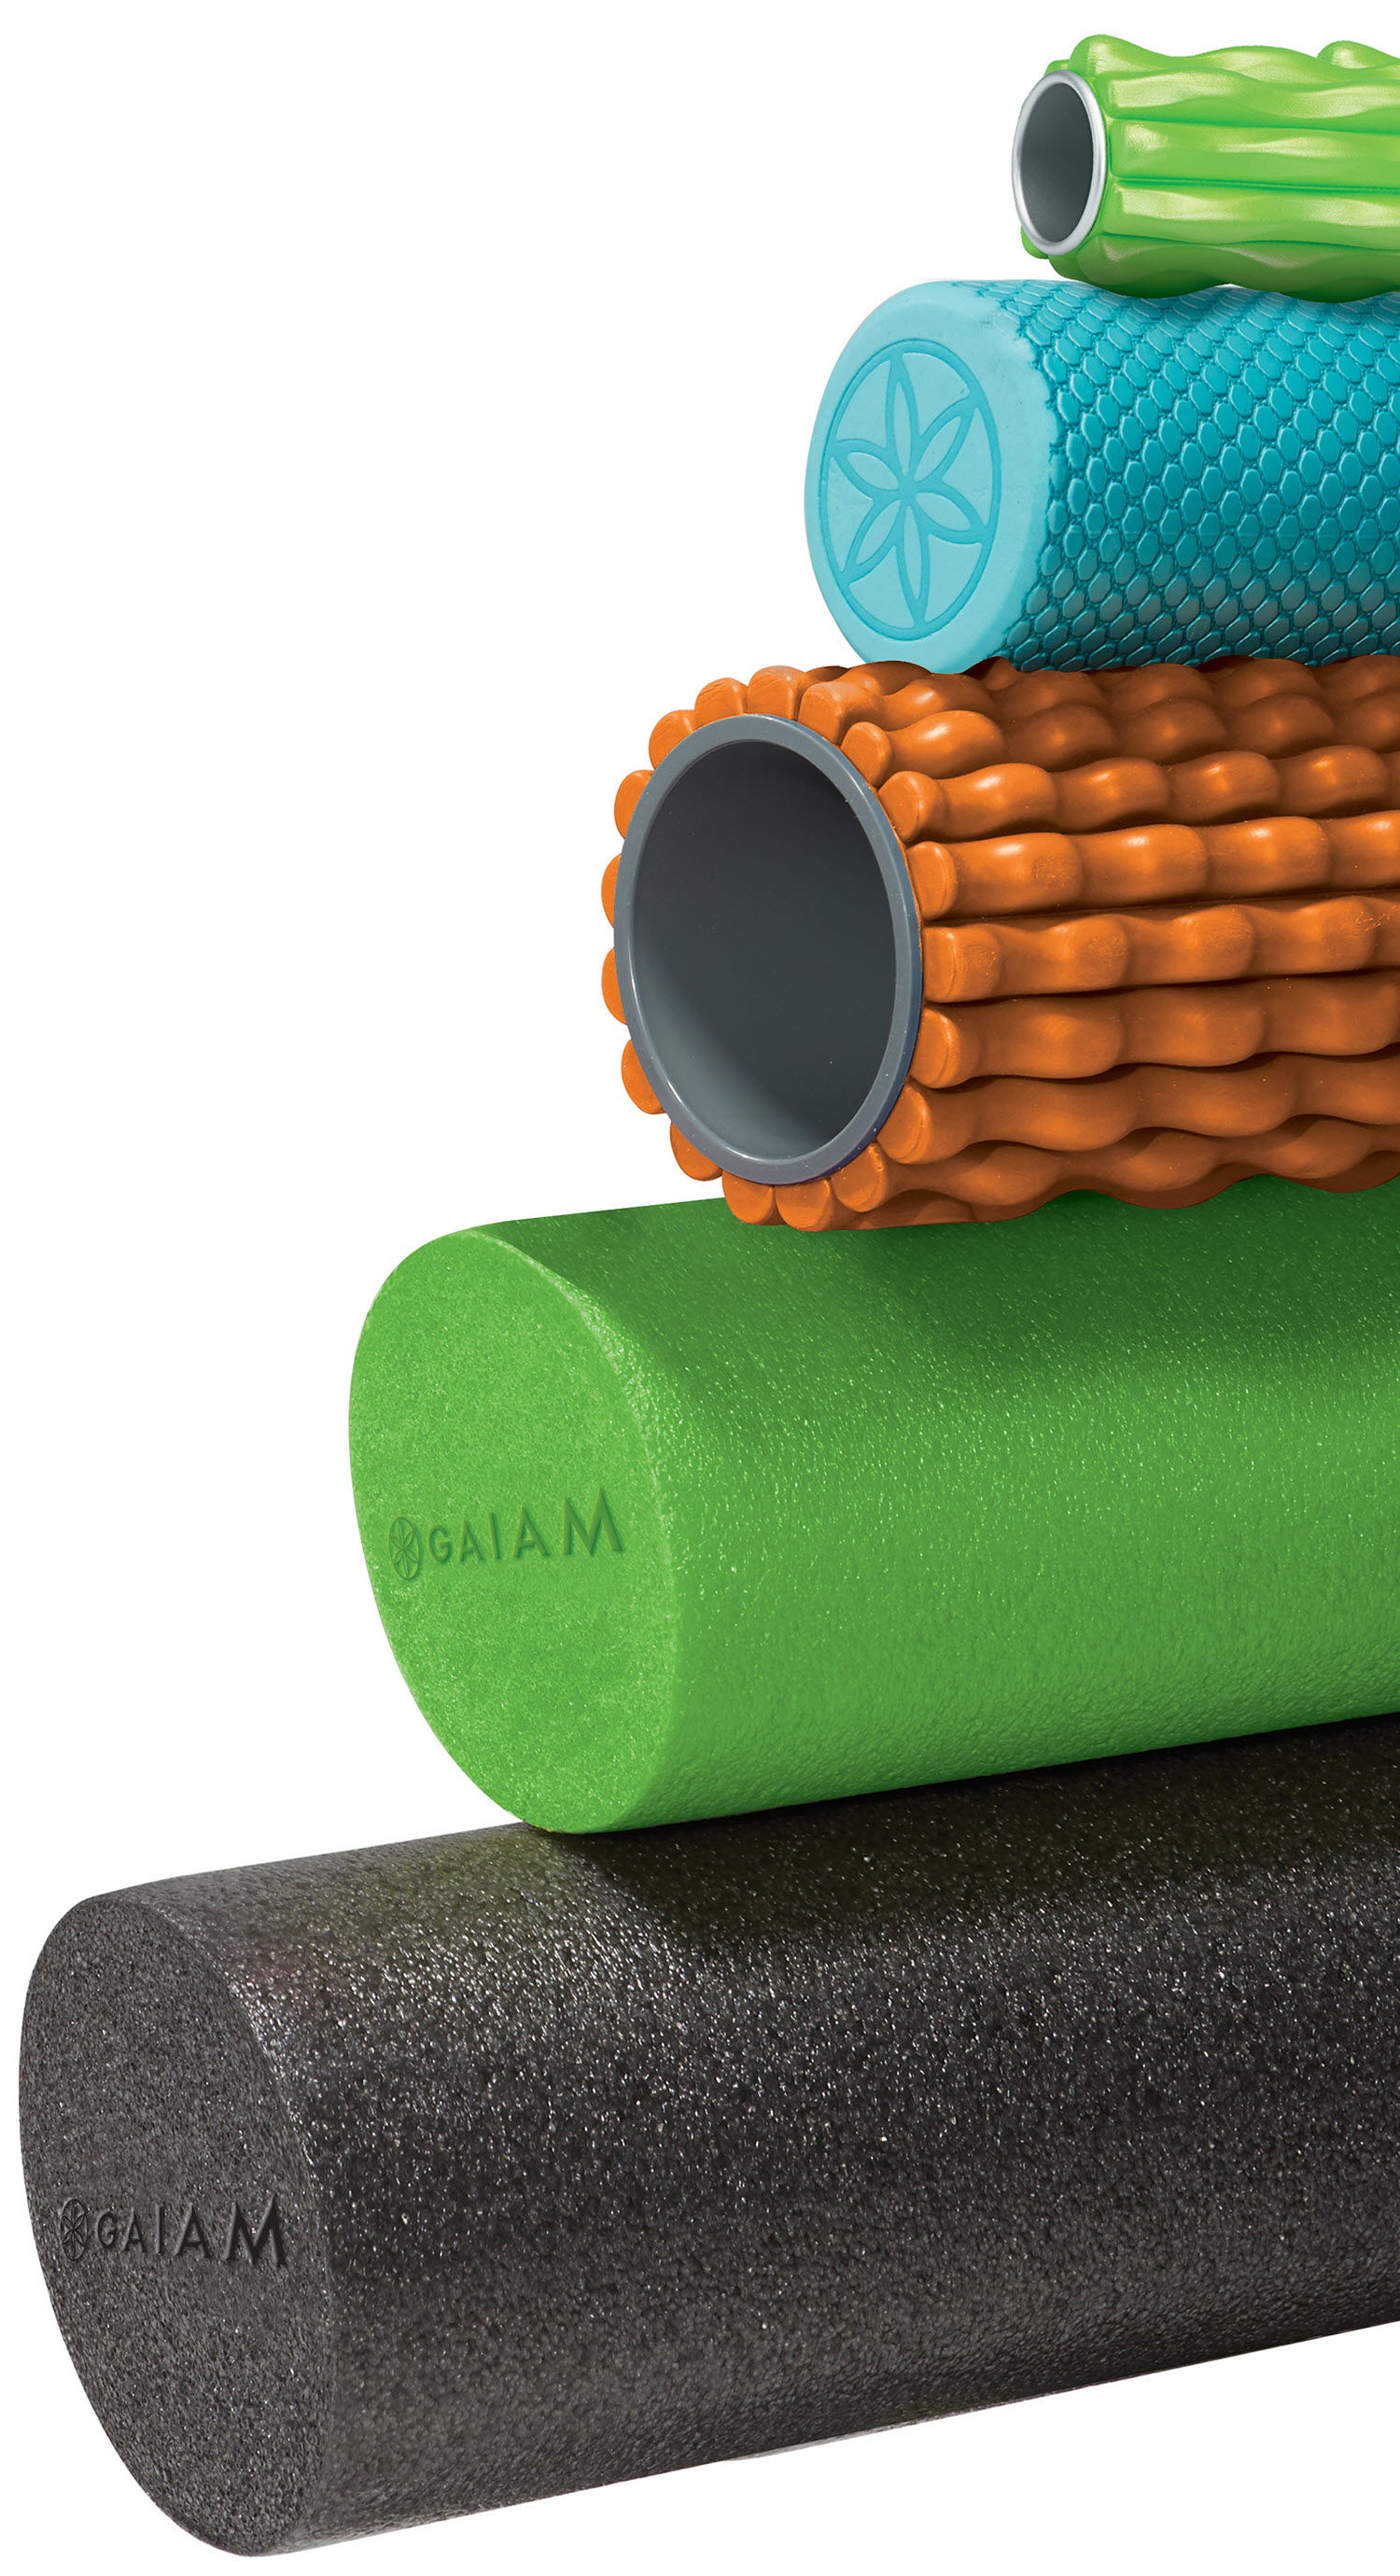 Choosing a Foam Roller: Types & Sizes